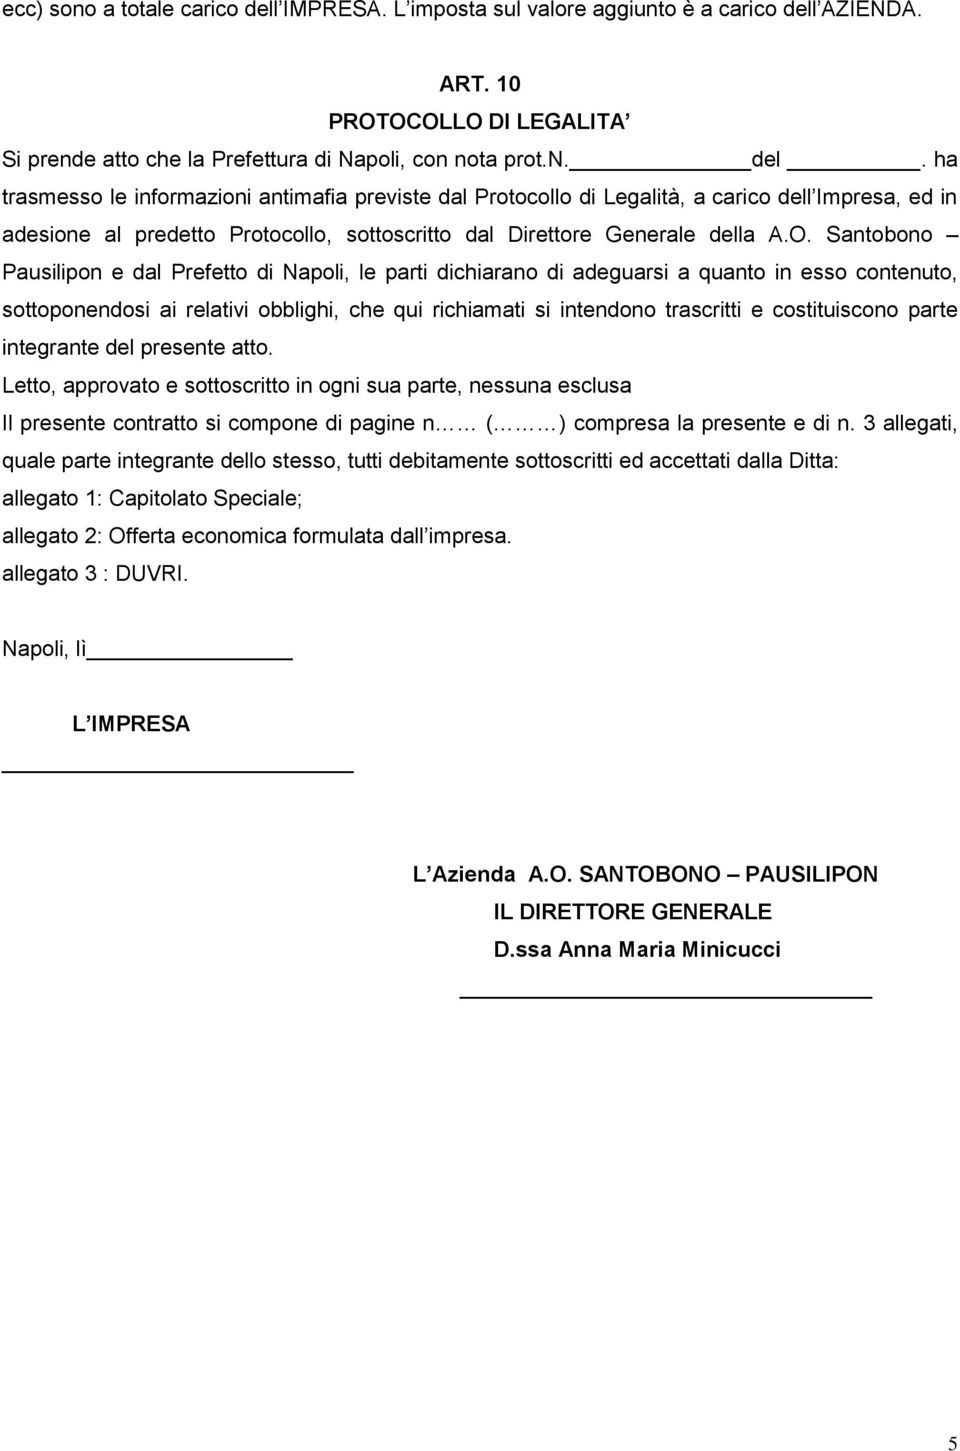 AZIENDA. ART. 10 PROTOCOLLO DI LEGALITA Si prende atto che la Prefettura di Napoli, con nota prot.n. del.